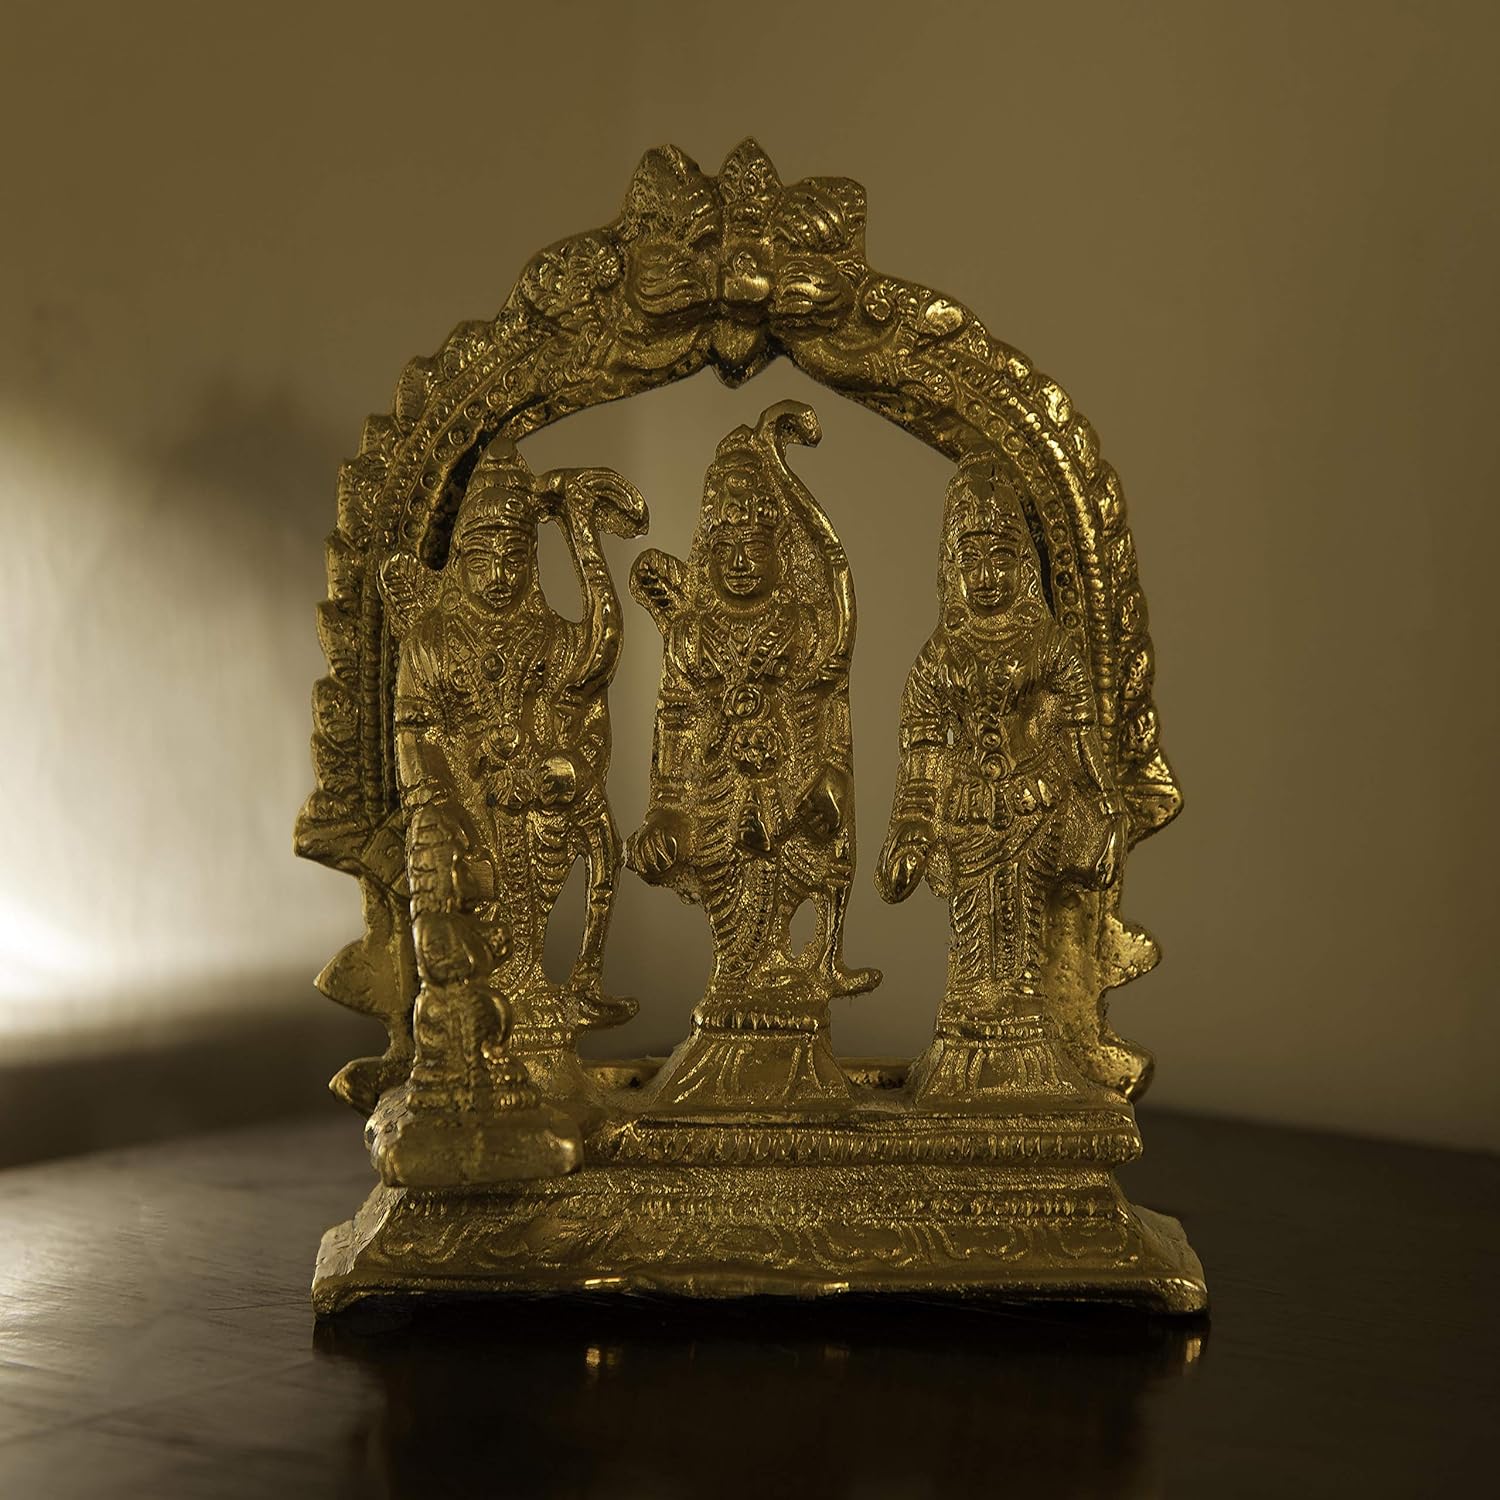 GURU JEE™ Brass Idol Ram Darbar Statue Lord Rama Laxman Sita Religious Gift Indian Art